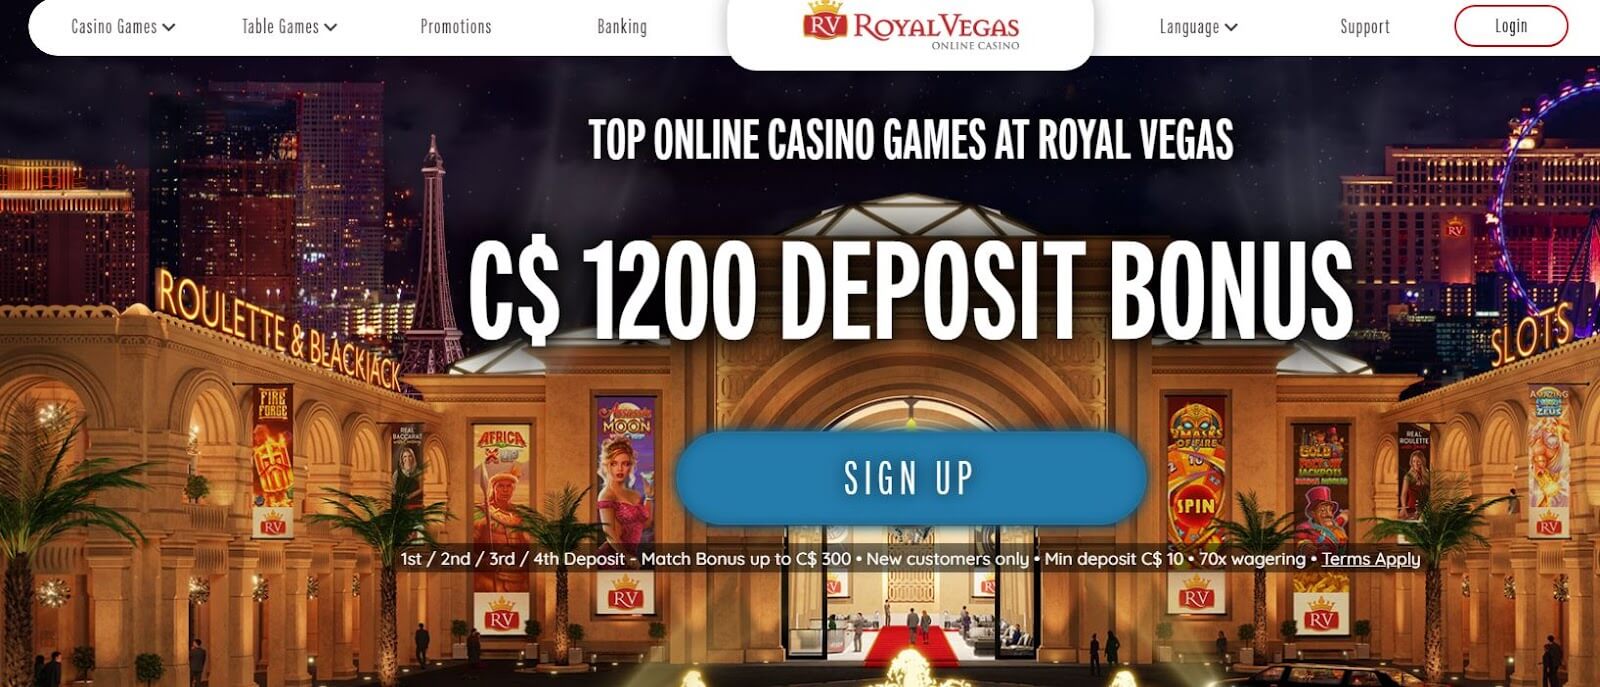 Royal Vegas Casino Interface